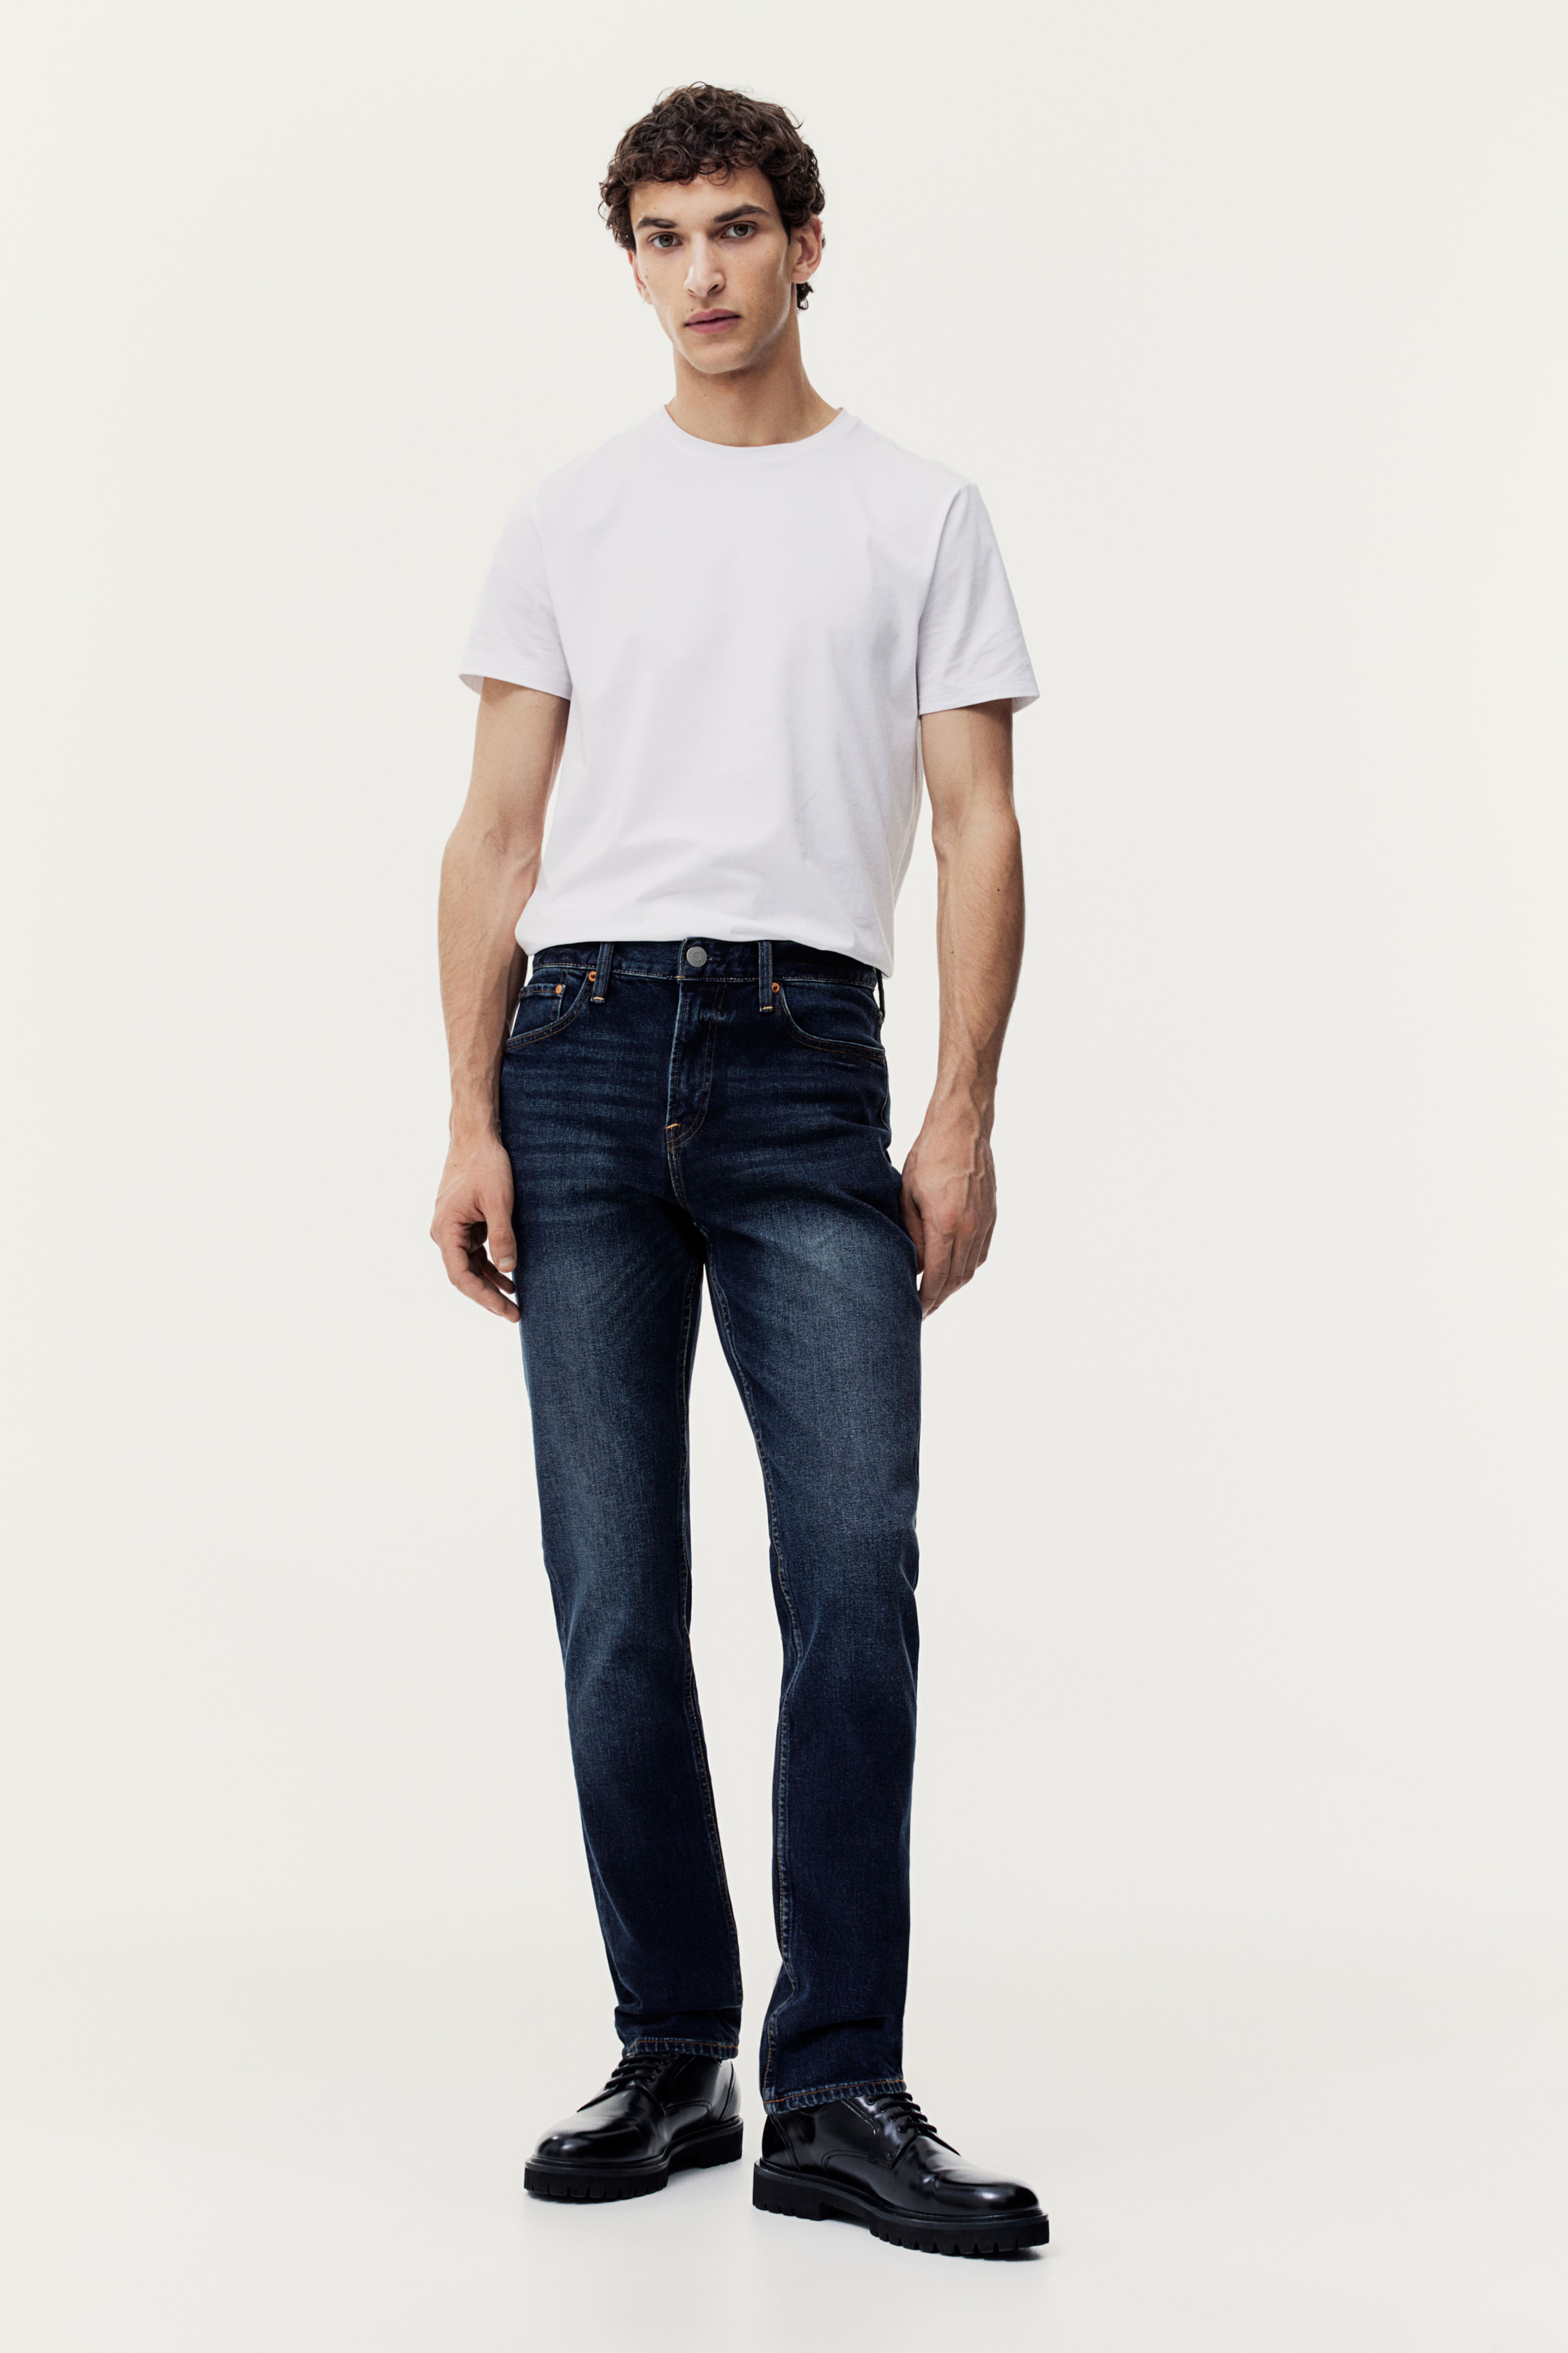 Buy Blue Slim-Fit Ankle Length Mens Jeans Online | Tistabene - Tistabene